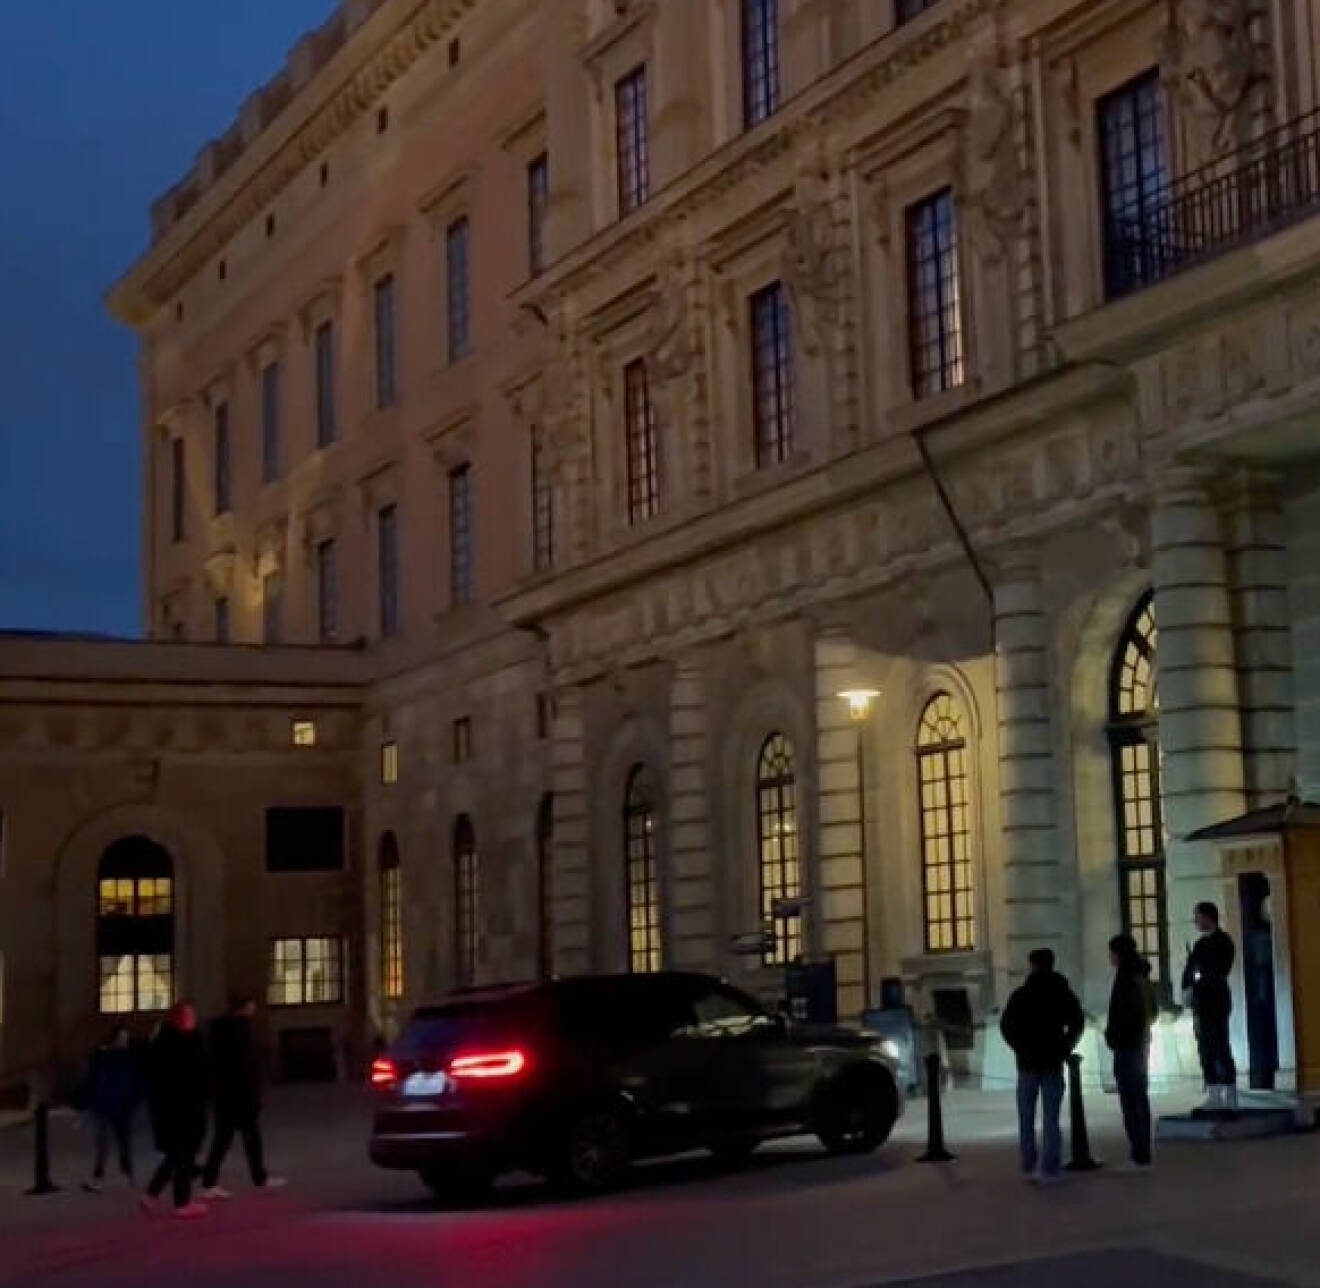 E-Types BMW kör in på slottet inför prins Daniels 50-årsfest